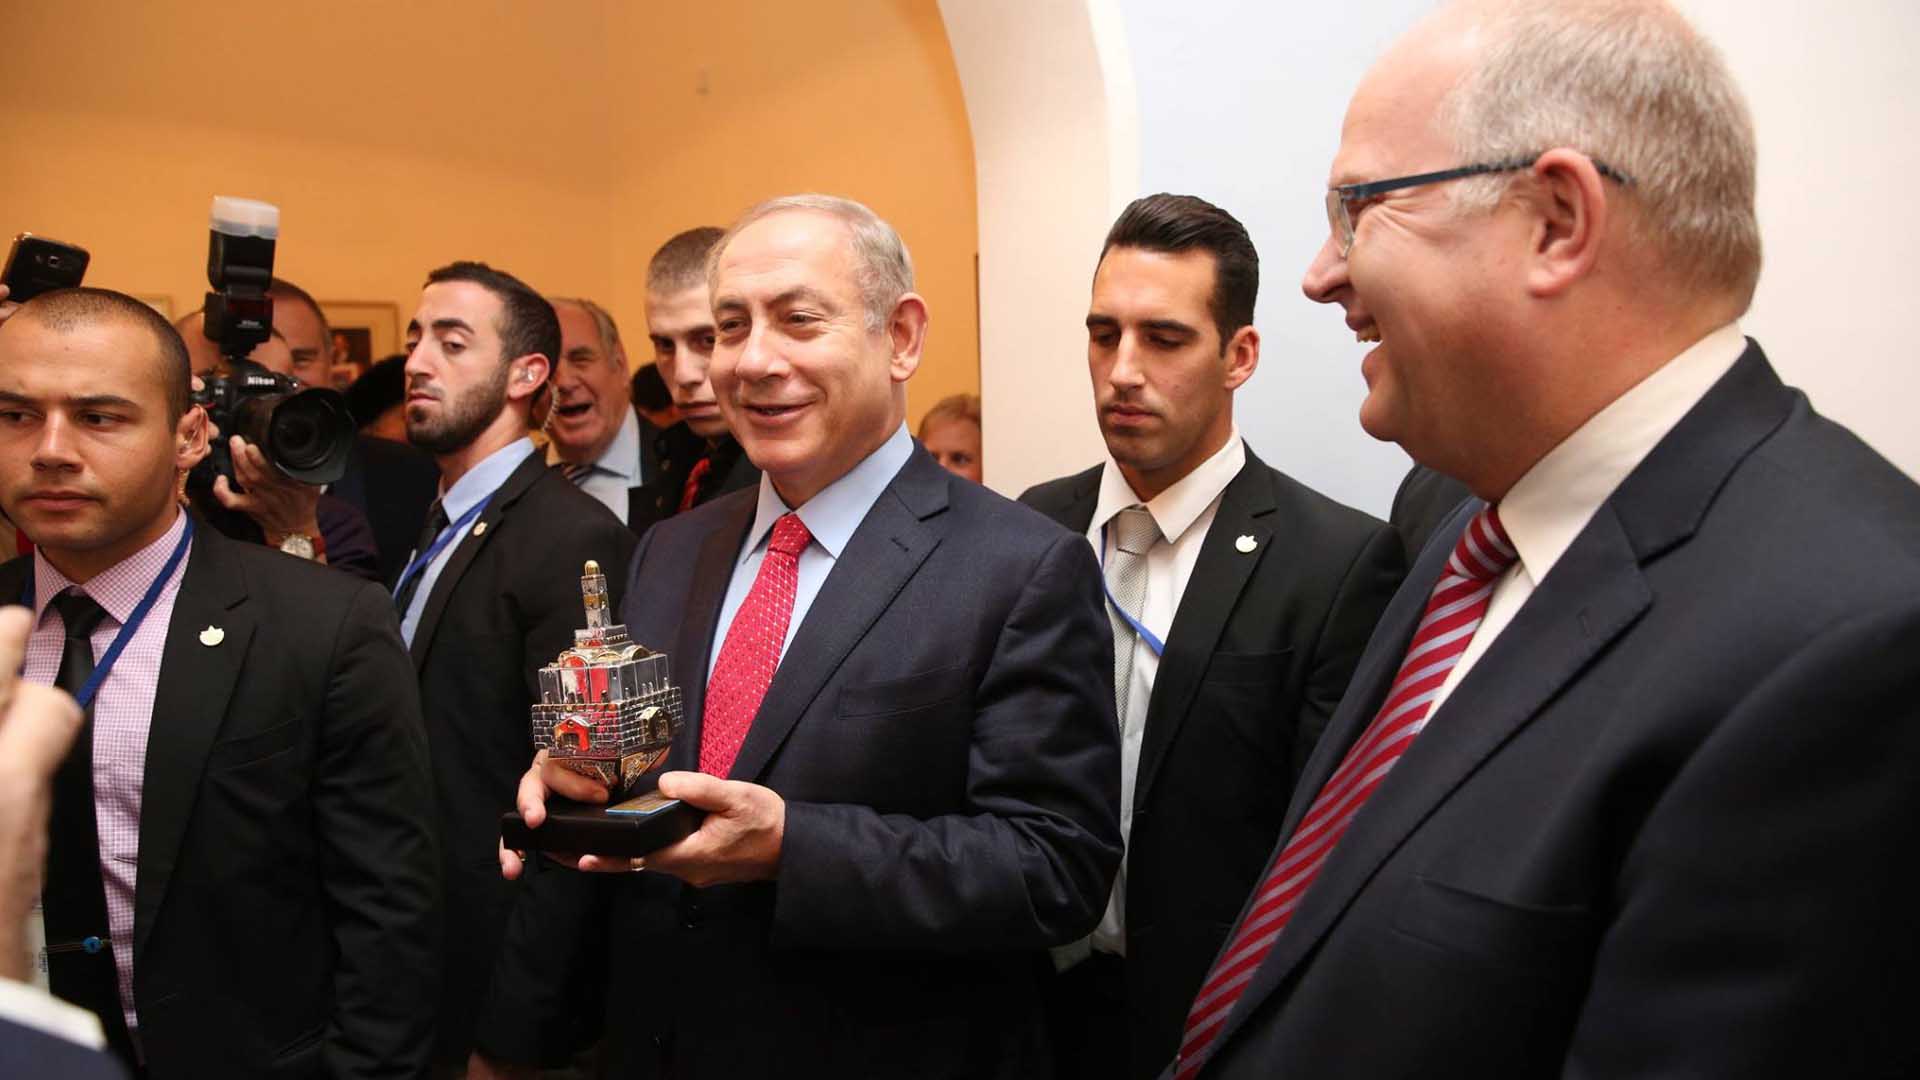 Reich beschenkt: Netanjahu freut sich über einen silbernen Dreidel